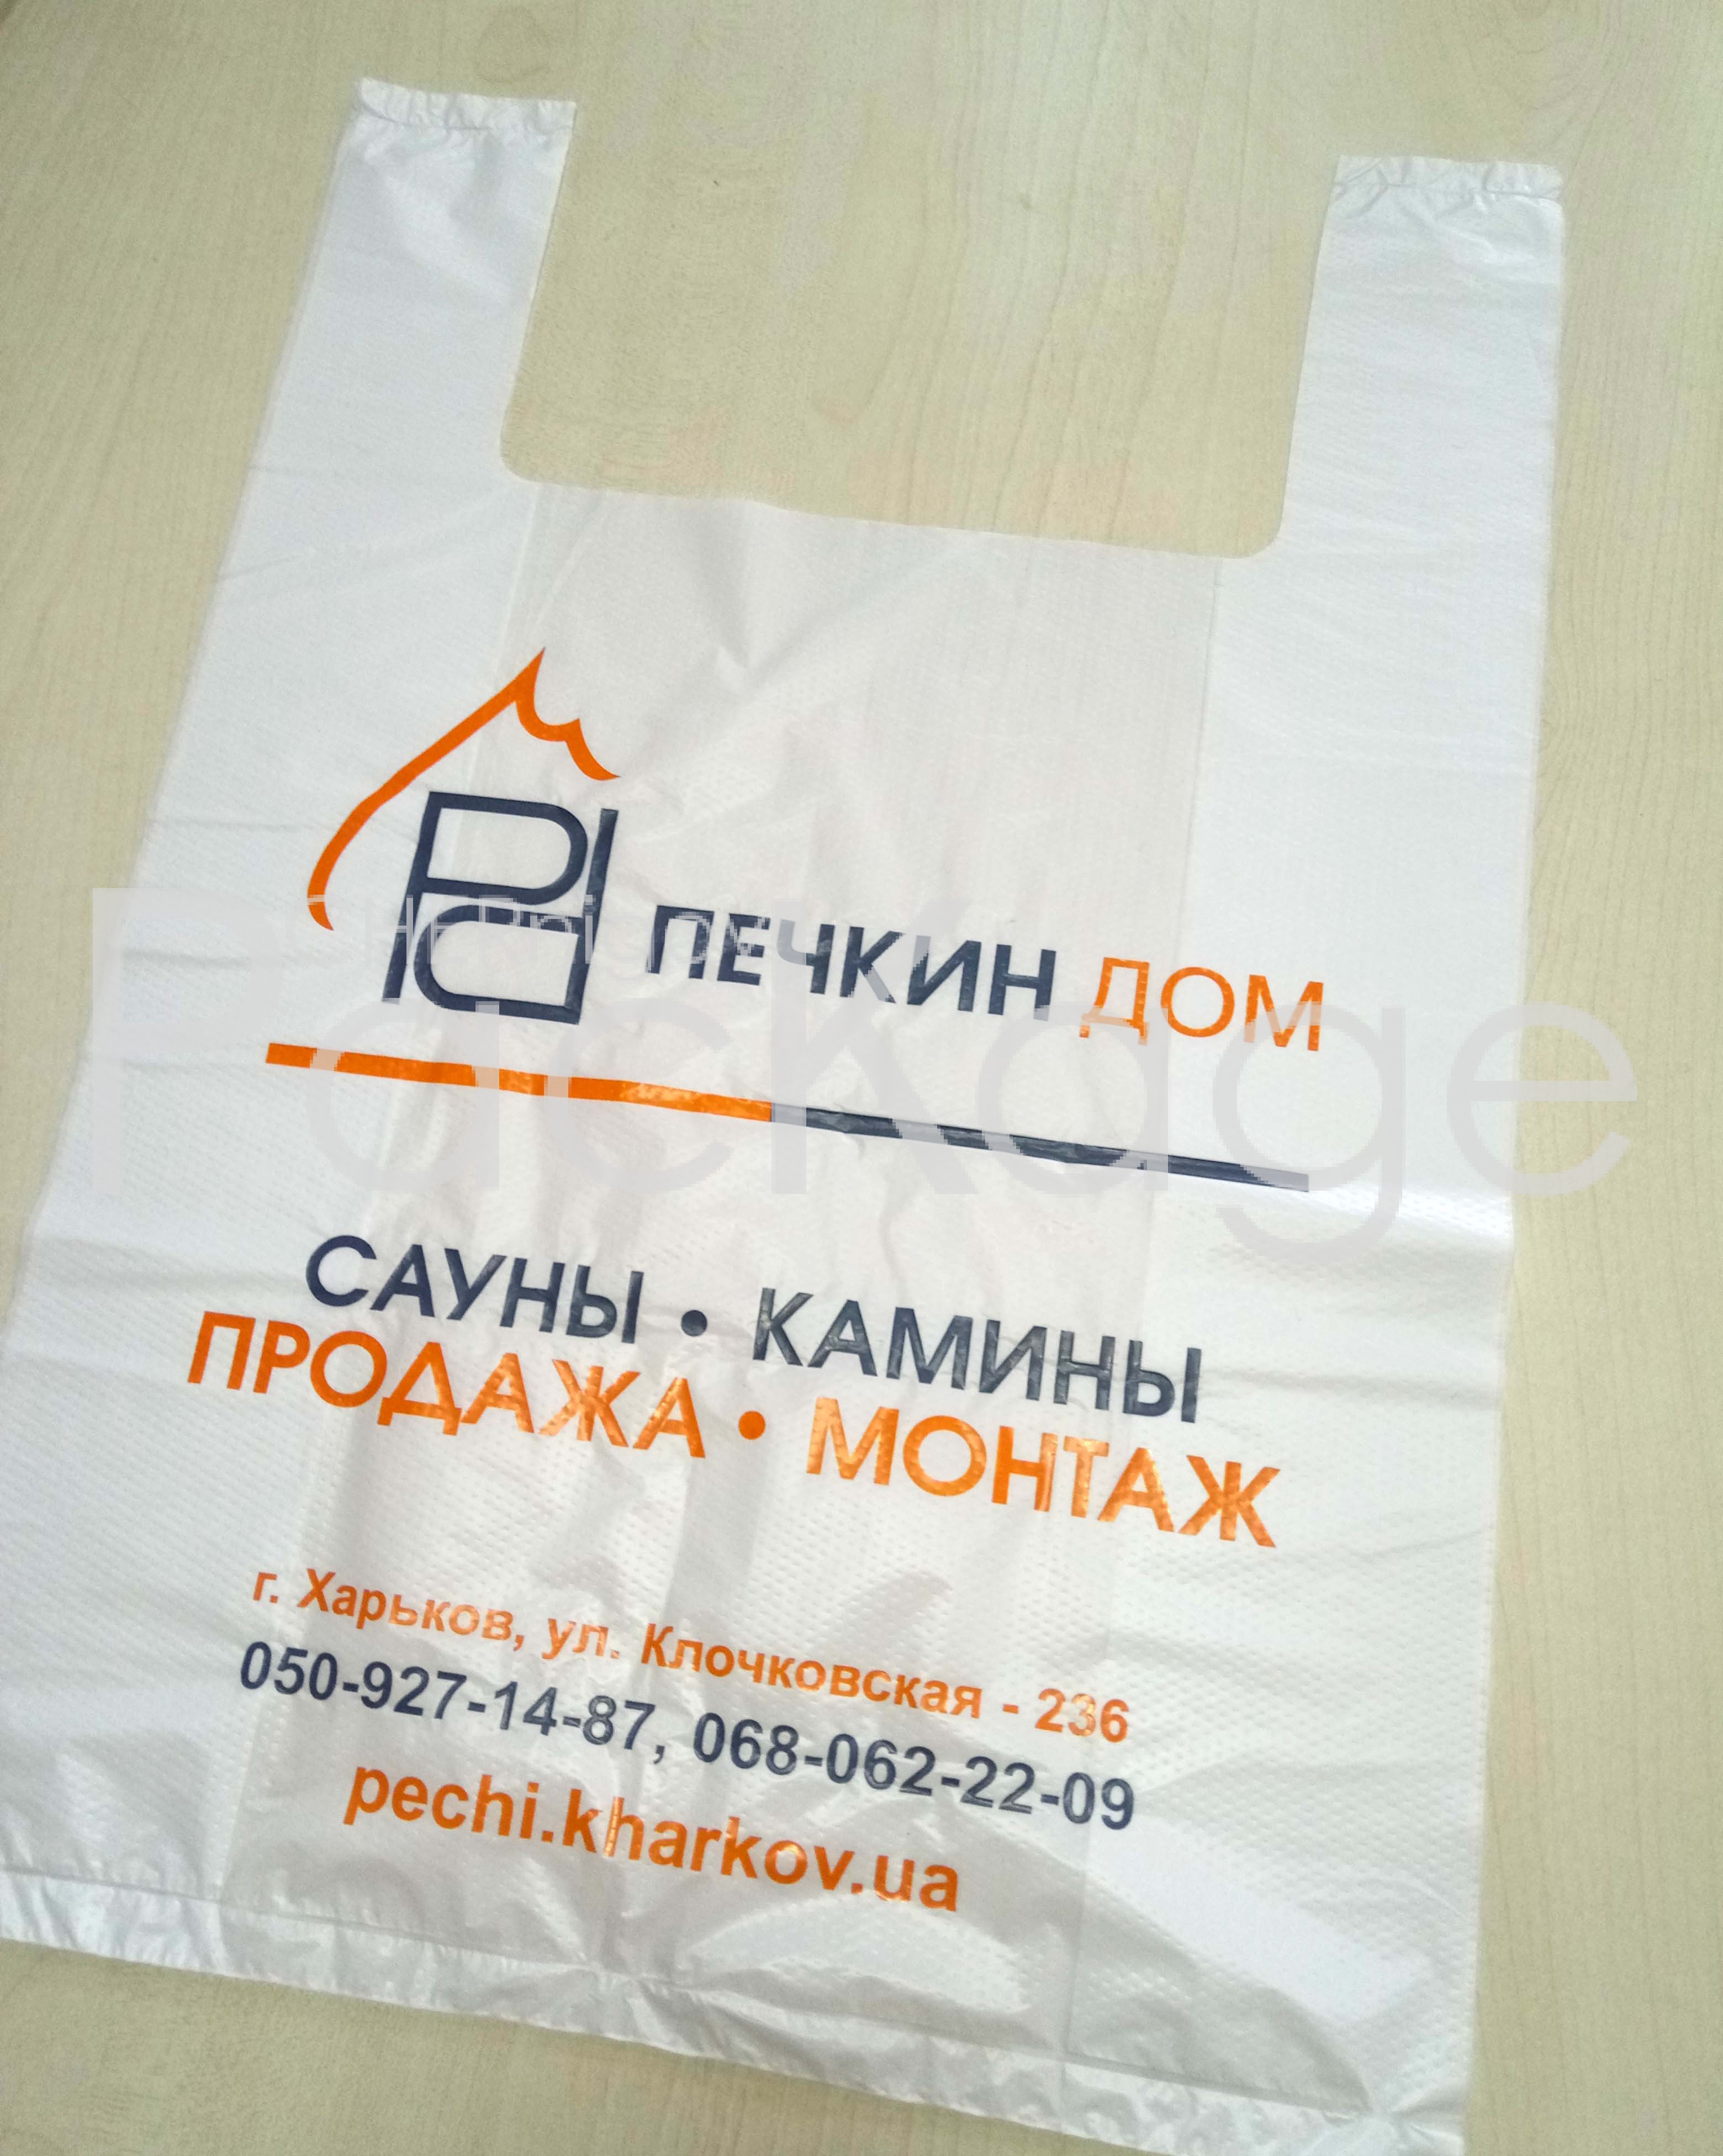 Изготовление упаковки. Полиэтиленовые мешки Chernigov Package - Photo P70310-104429